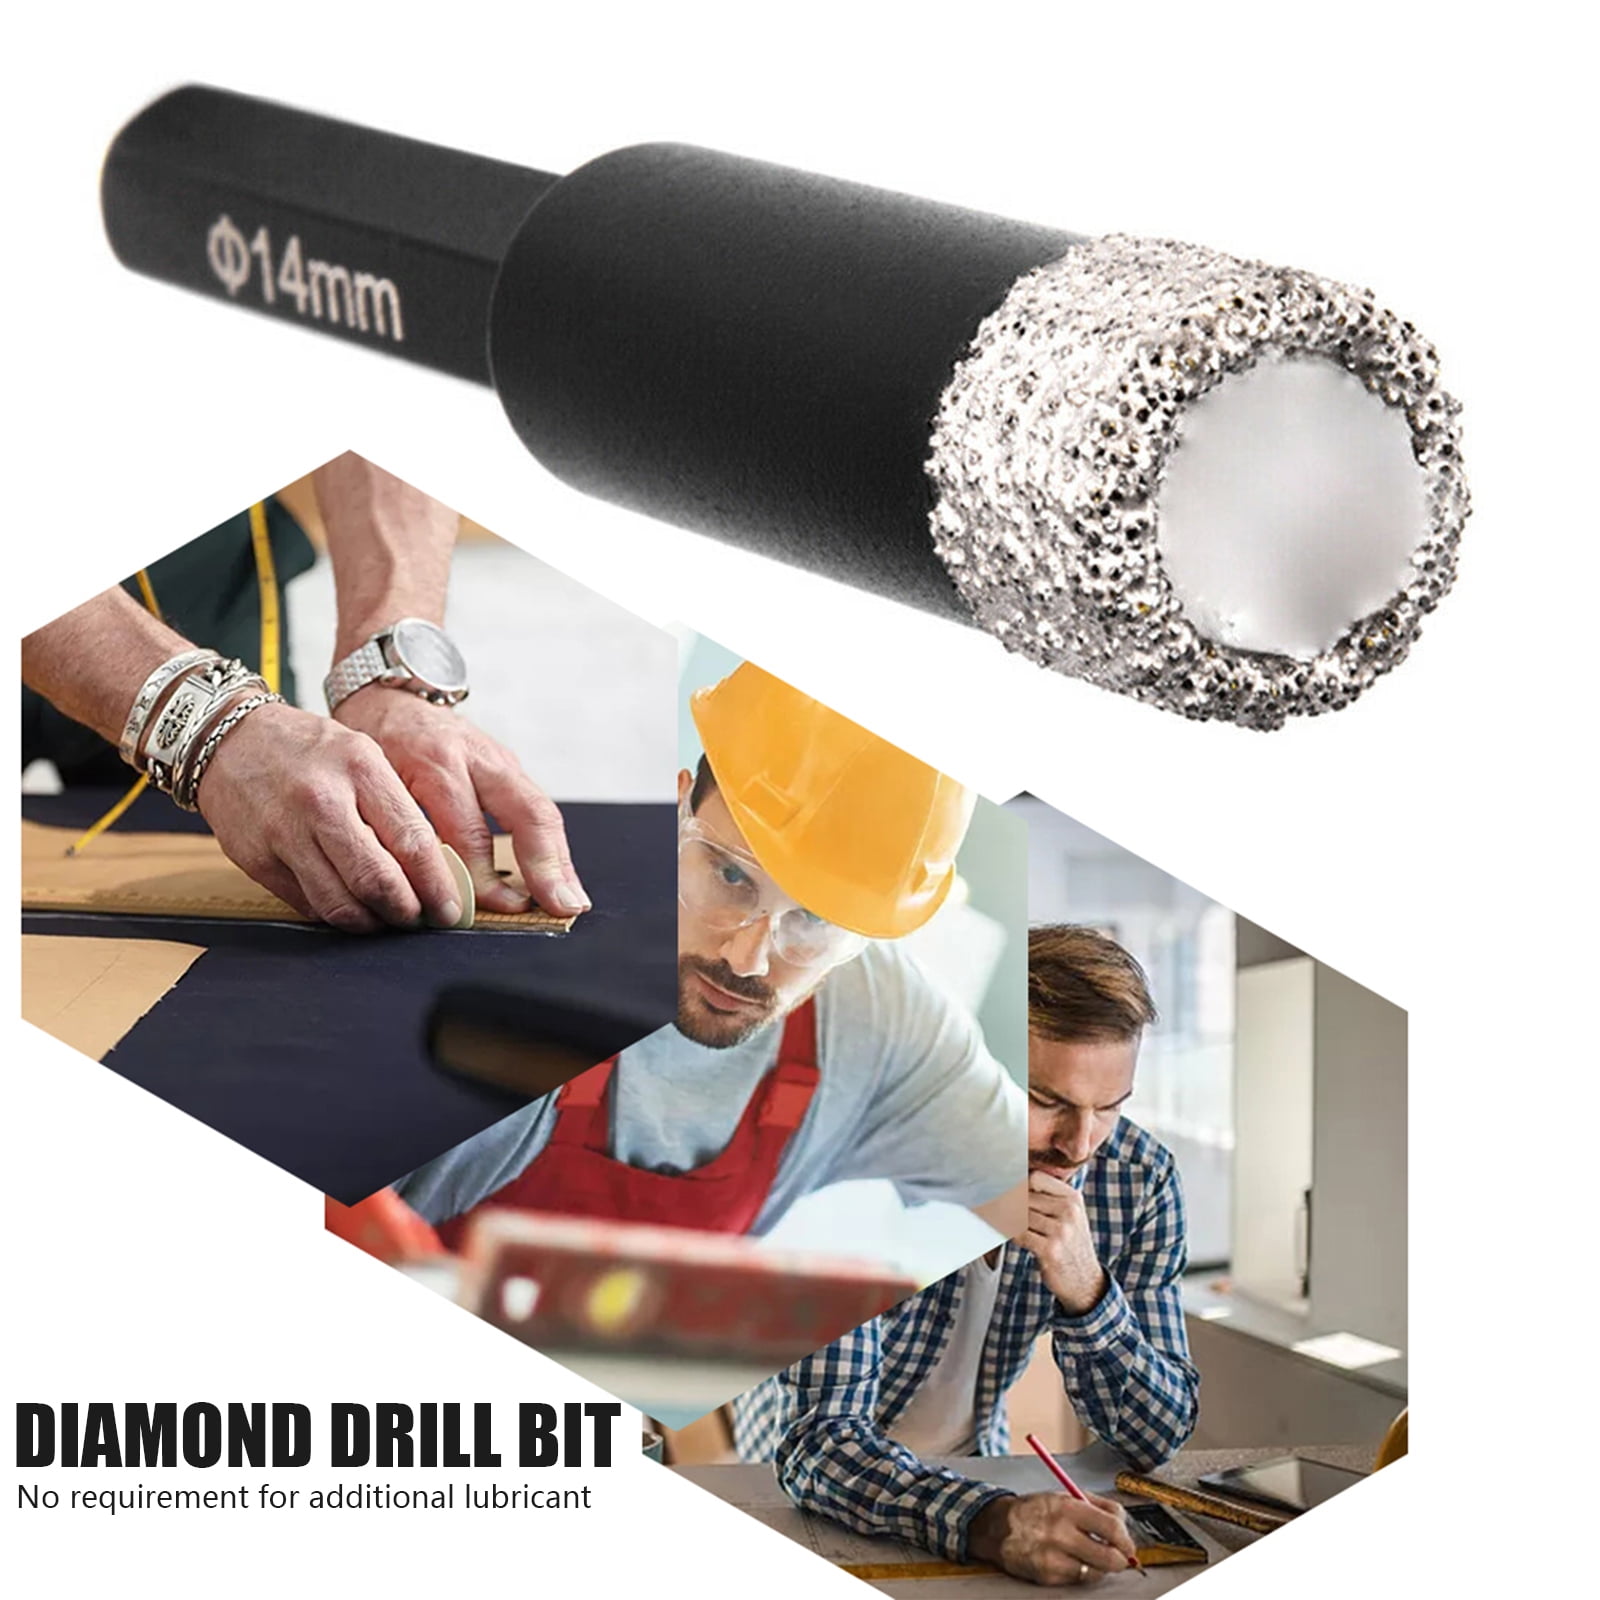 DRY DIAMOND DRILL BITS FOR PORCELAIN GRANITE TILE GLASS CERAMICS MARBLE 6mm-14mm 